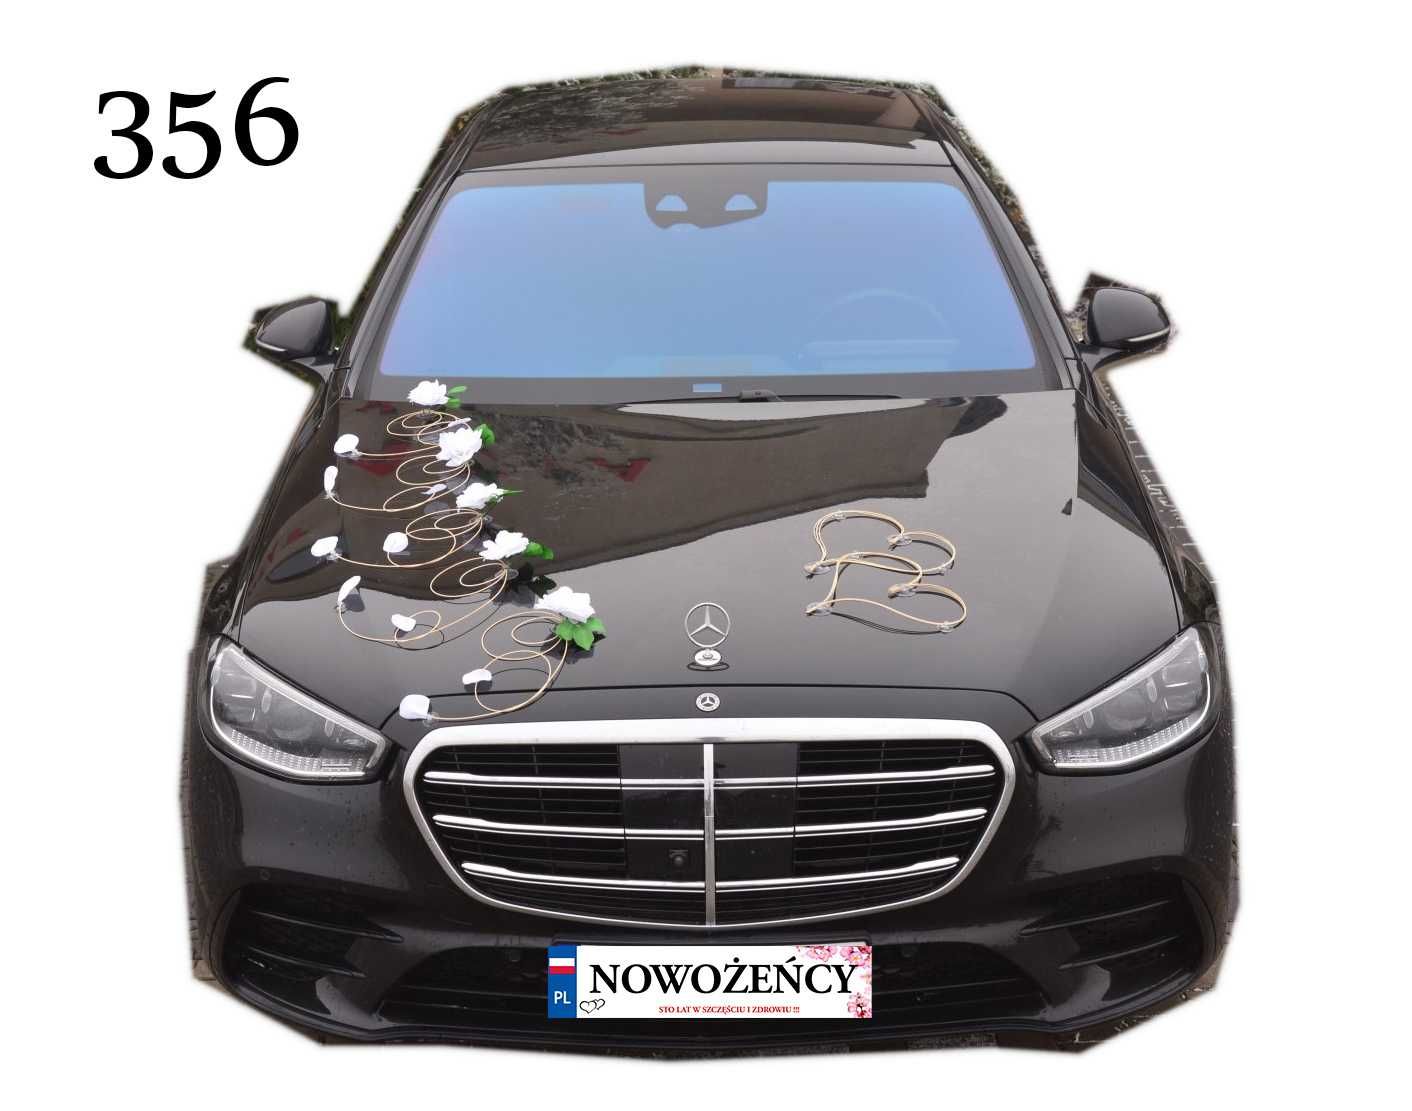 Dekoracja na czarny samochód-BIAŁE RÓŻE- ślub wesele Nr 356